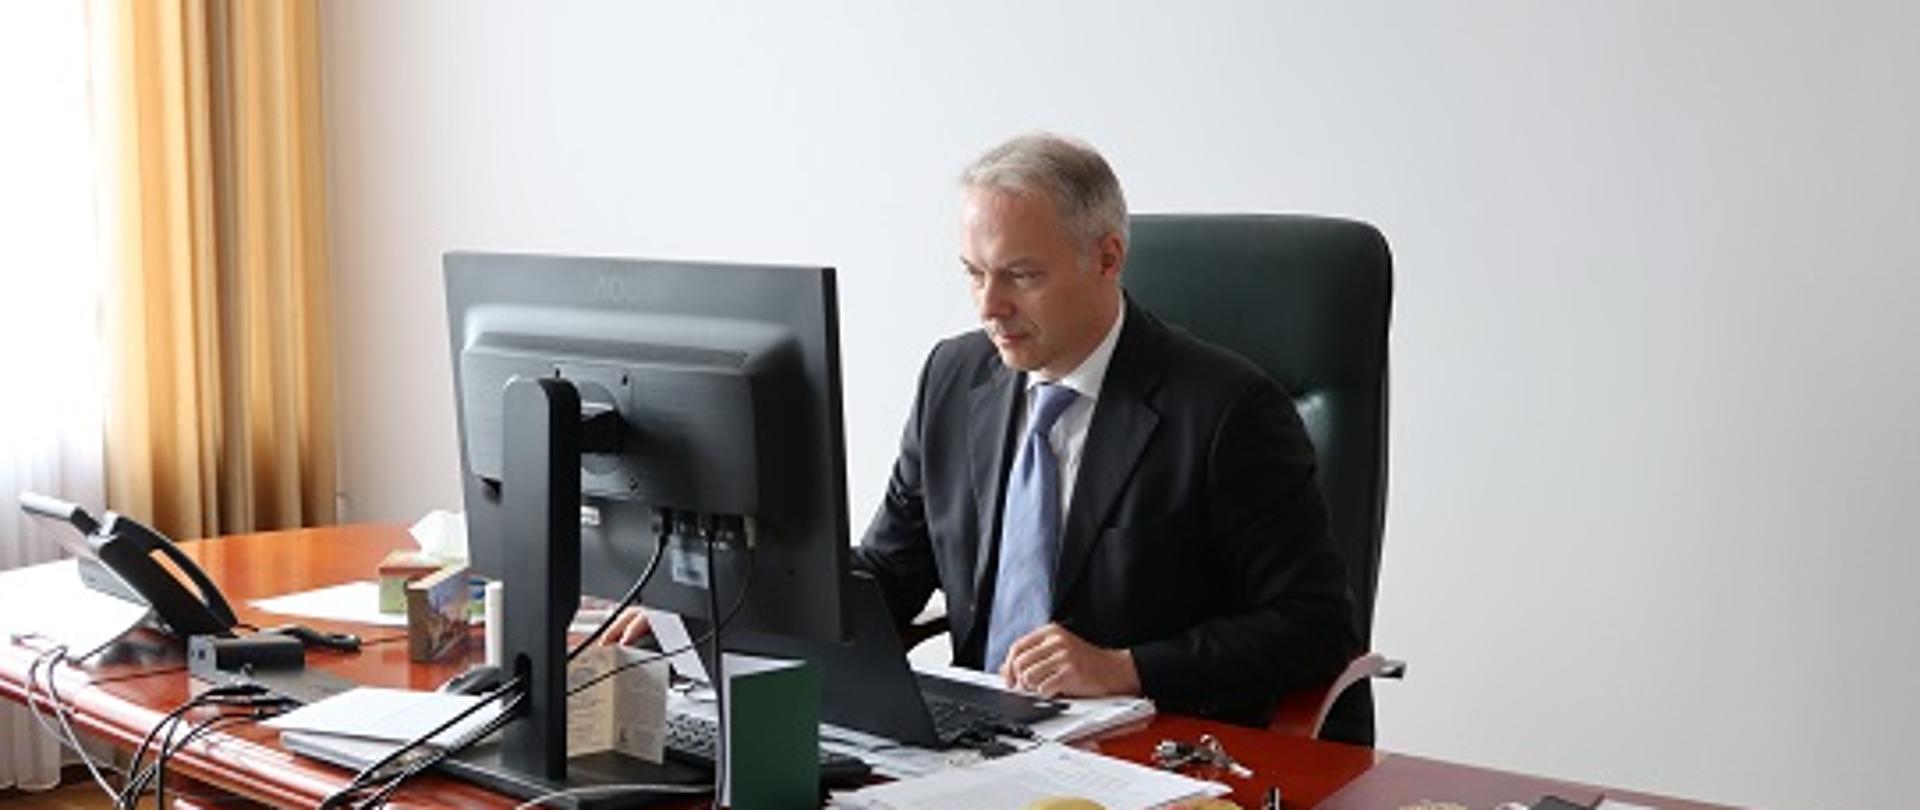 Wiceminister Jacek Żalek siedzi przy biurku, przed komputerem. Na biurku widoczne dokumenty.